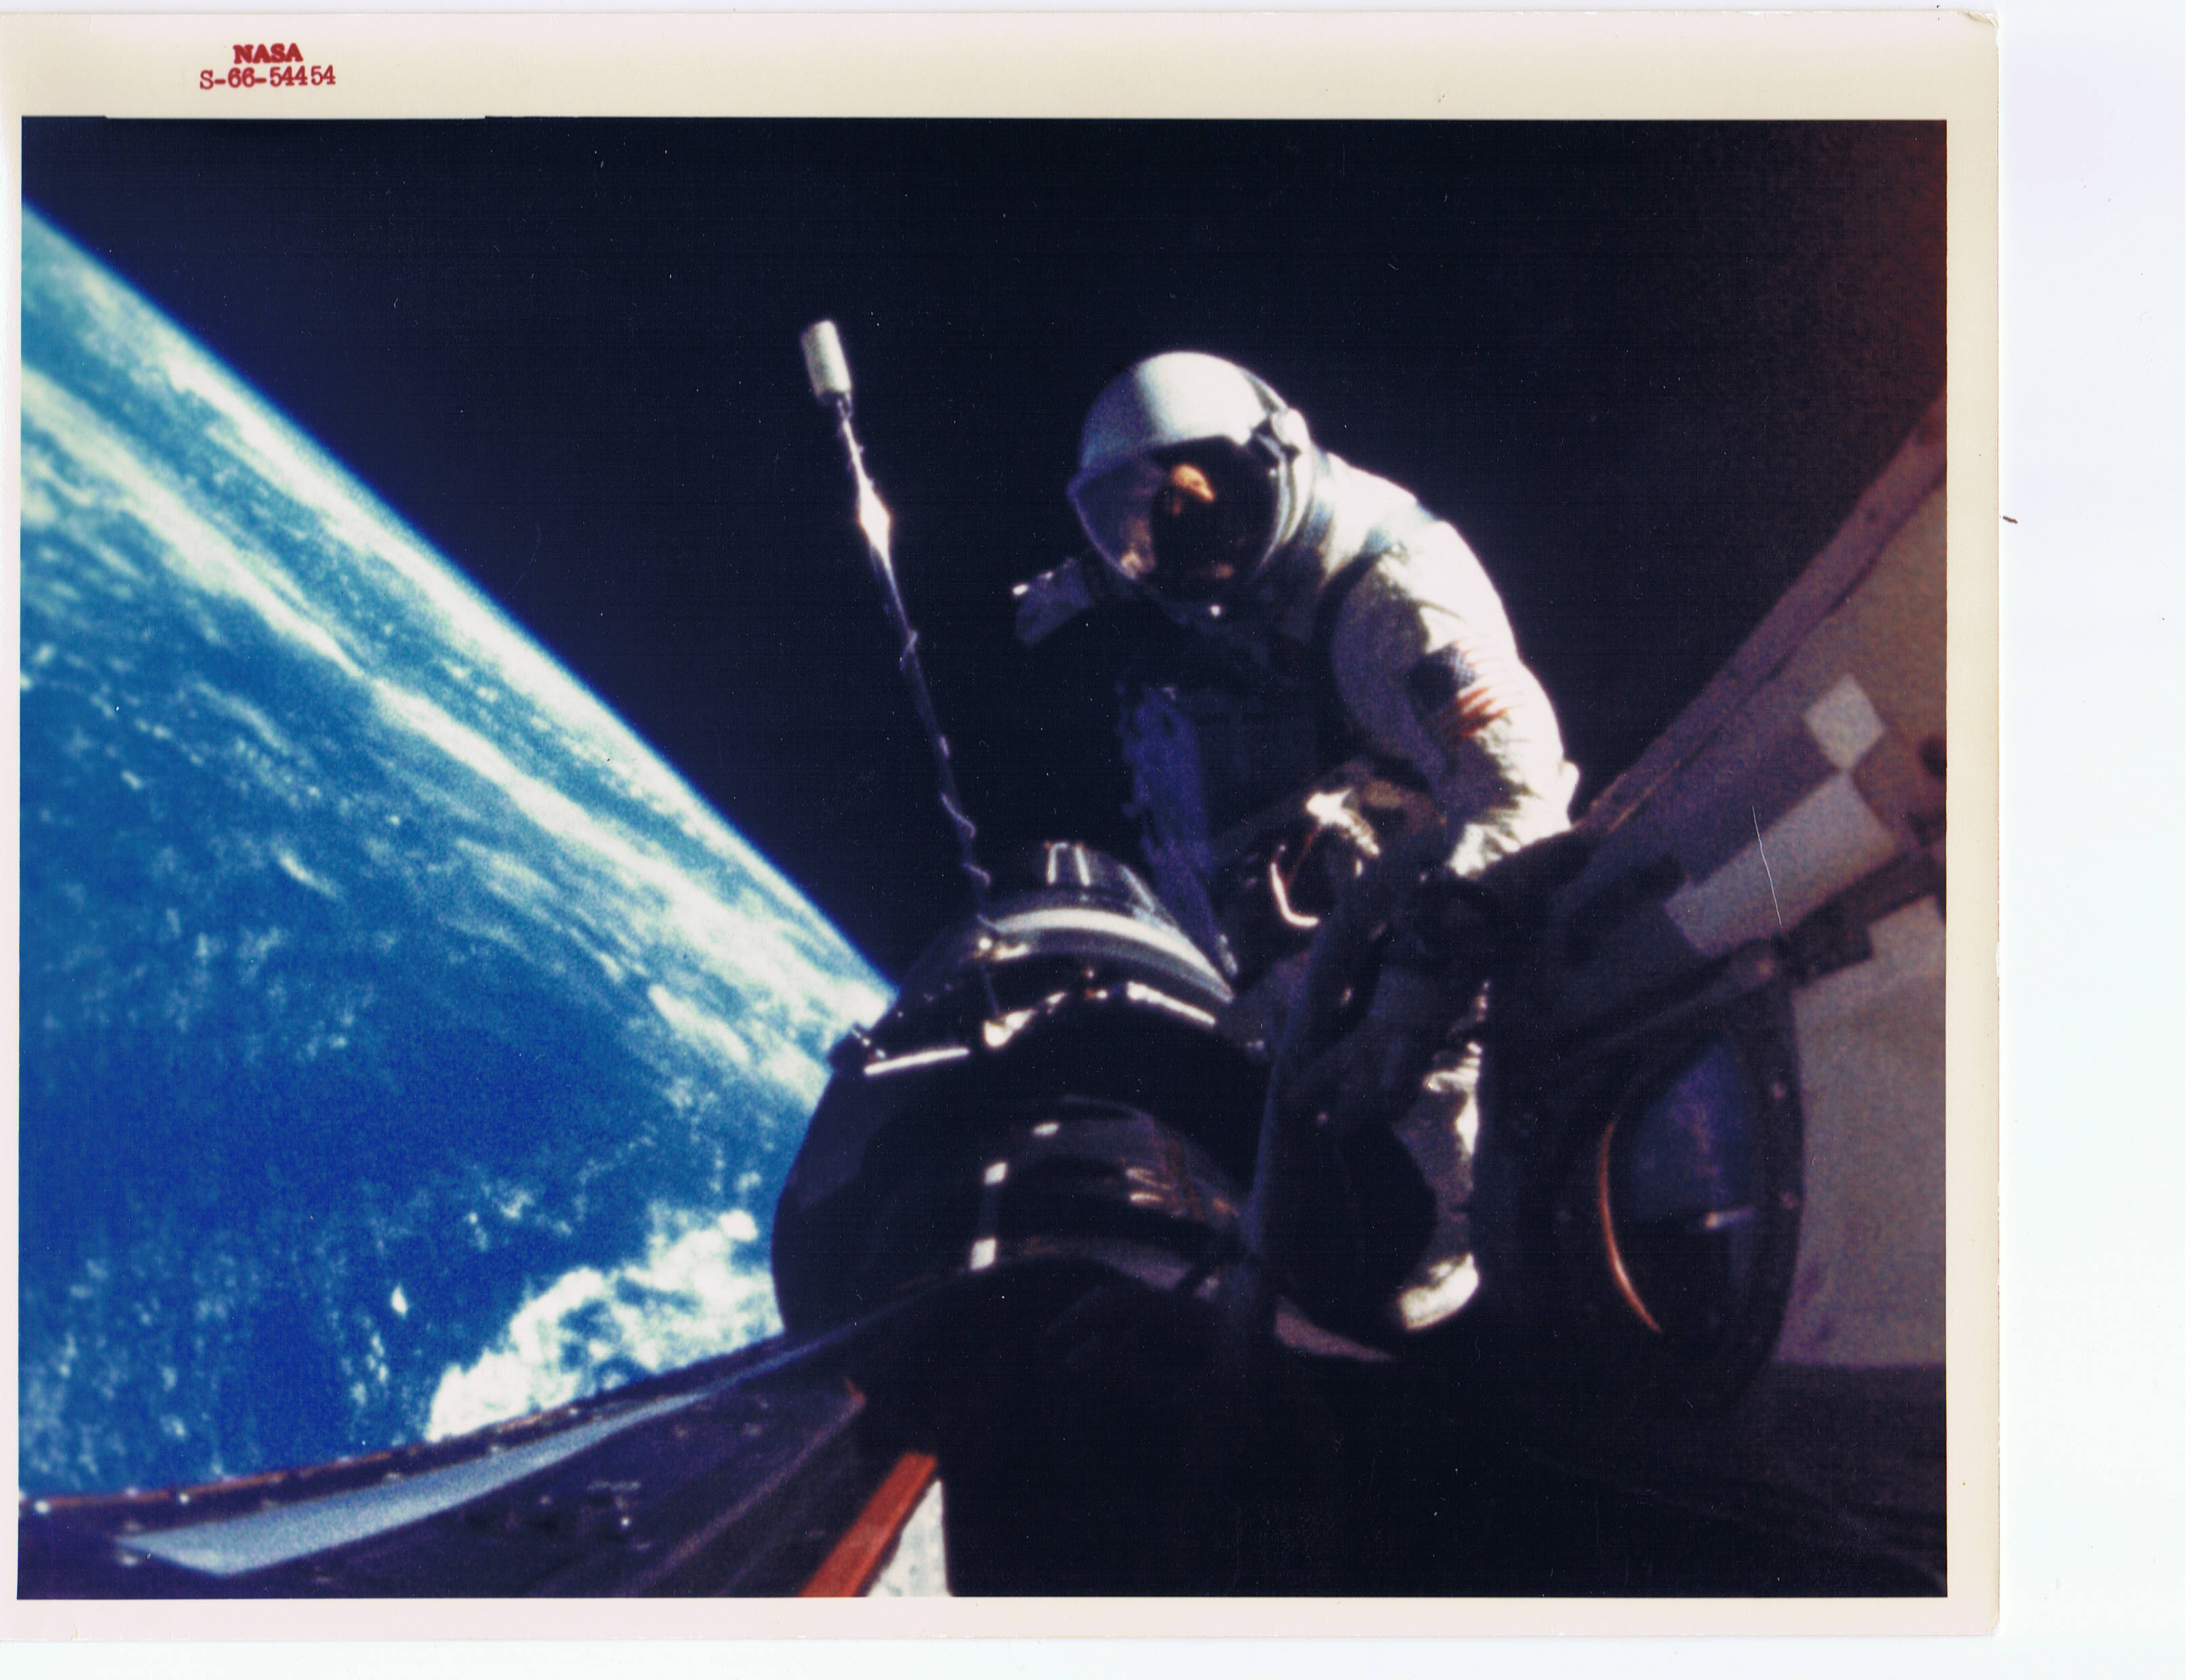 Gemini-11-recovery-12.jpg